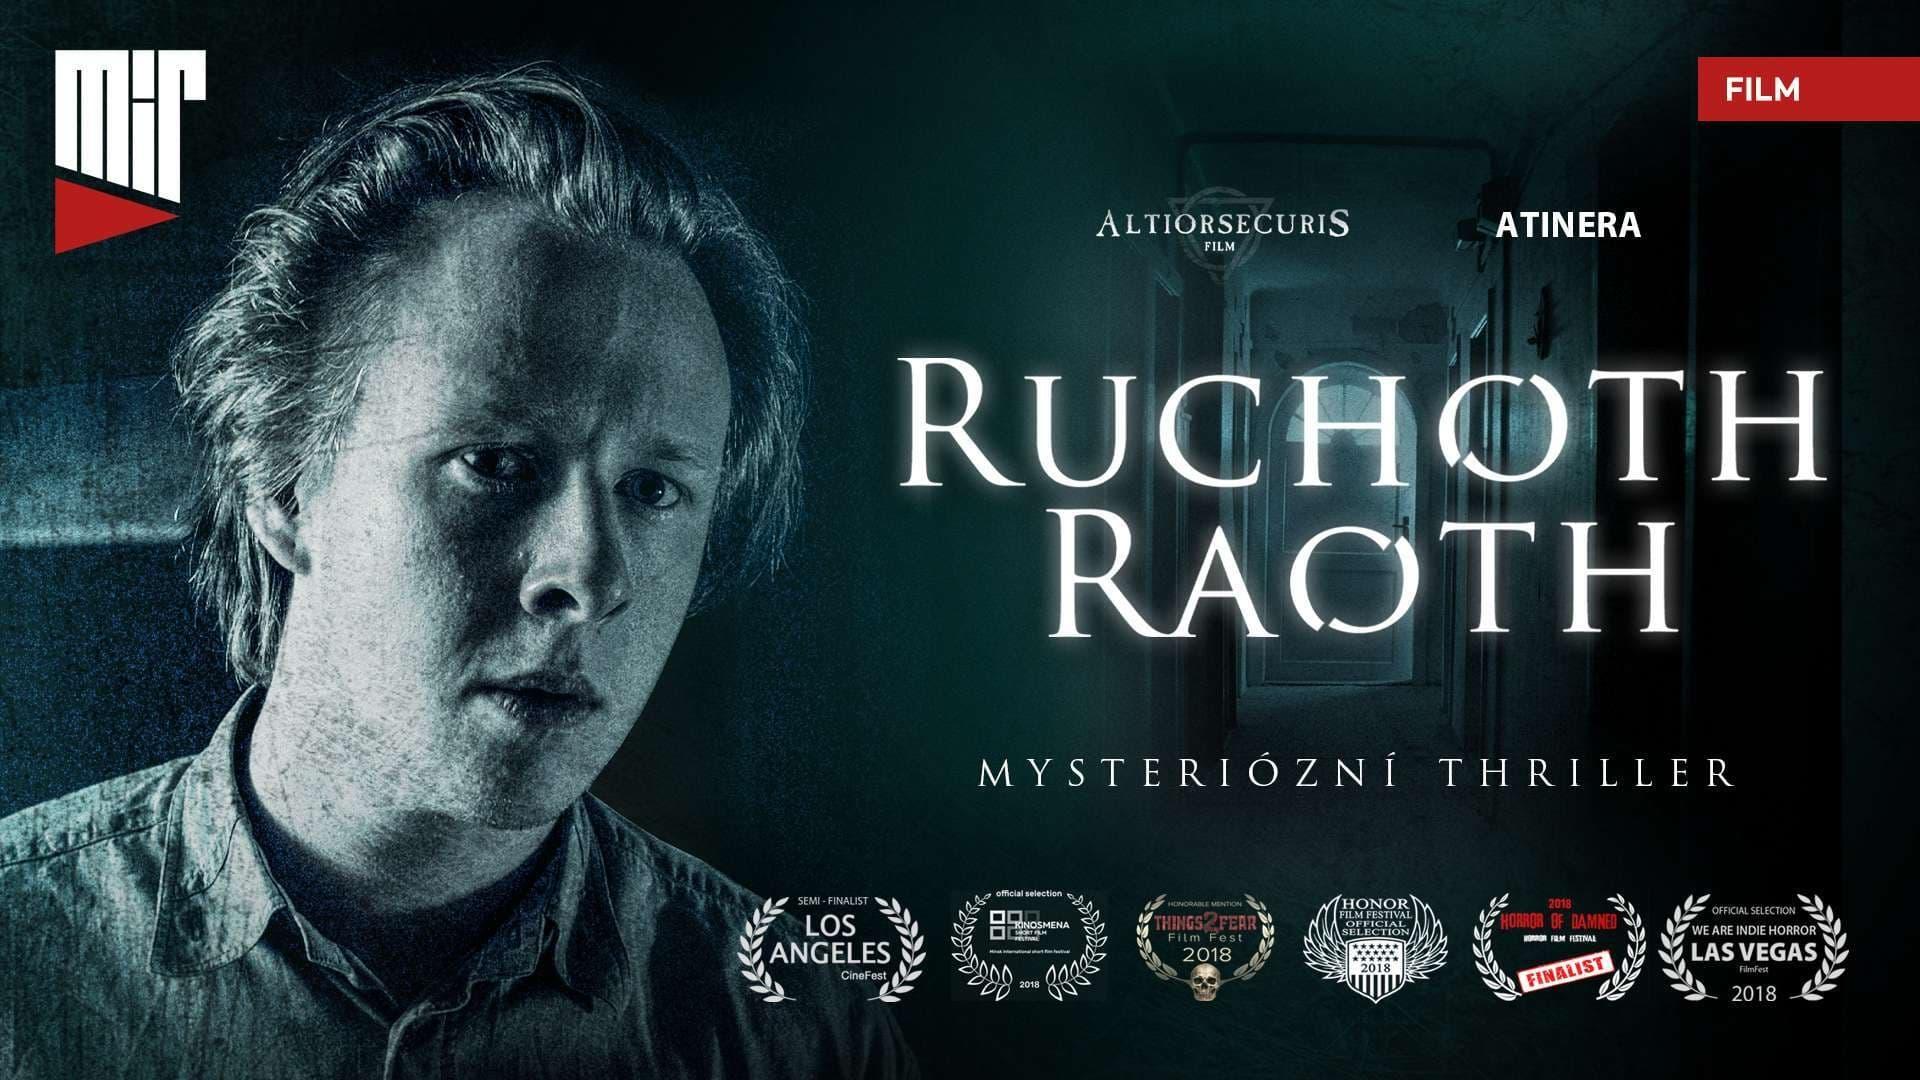 Ruchoth Raoth backdrop